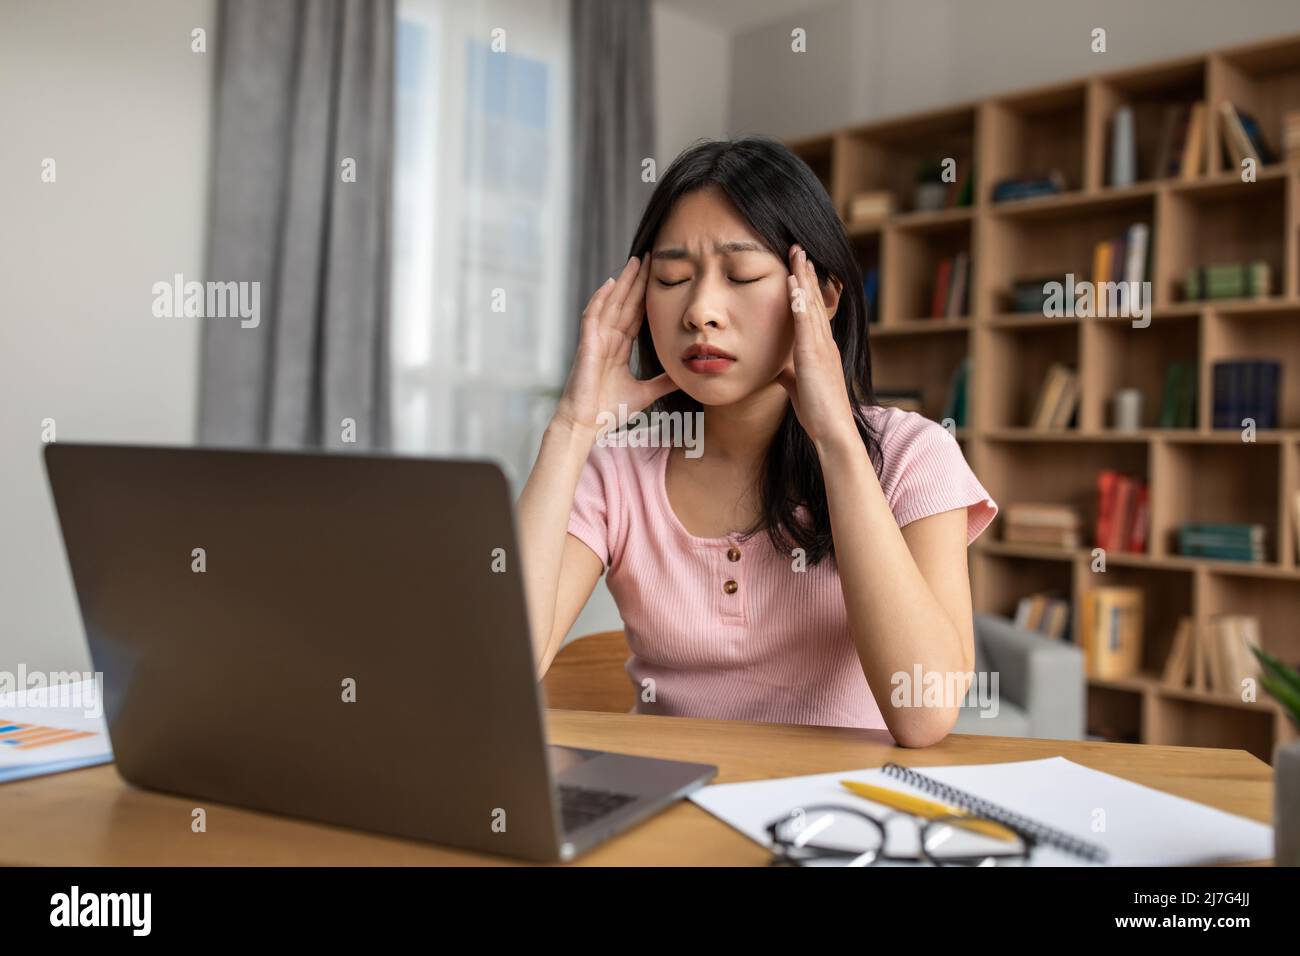 Contrainte d'échéance. Une jeune femme coréenne se sentait fatiguée après avoir travaillé sur un ordinateur portable, avoir des maux de tête et toucher des temples Banque D'Images